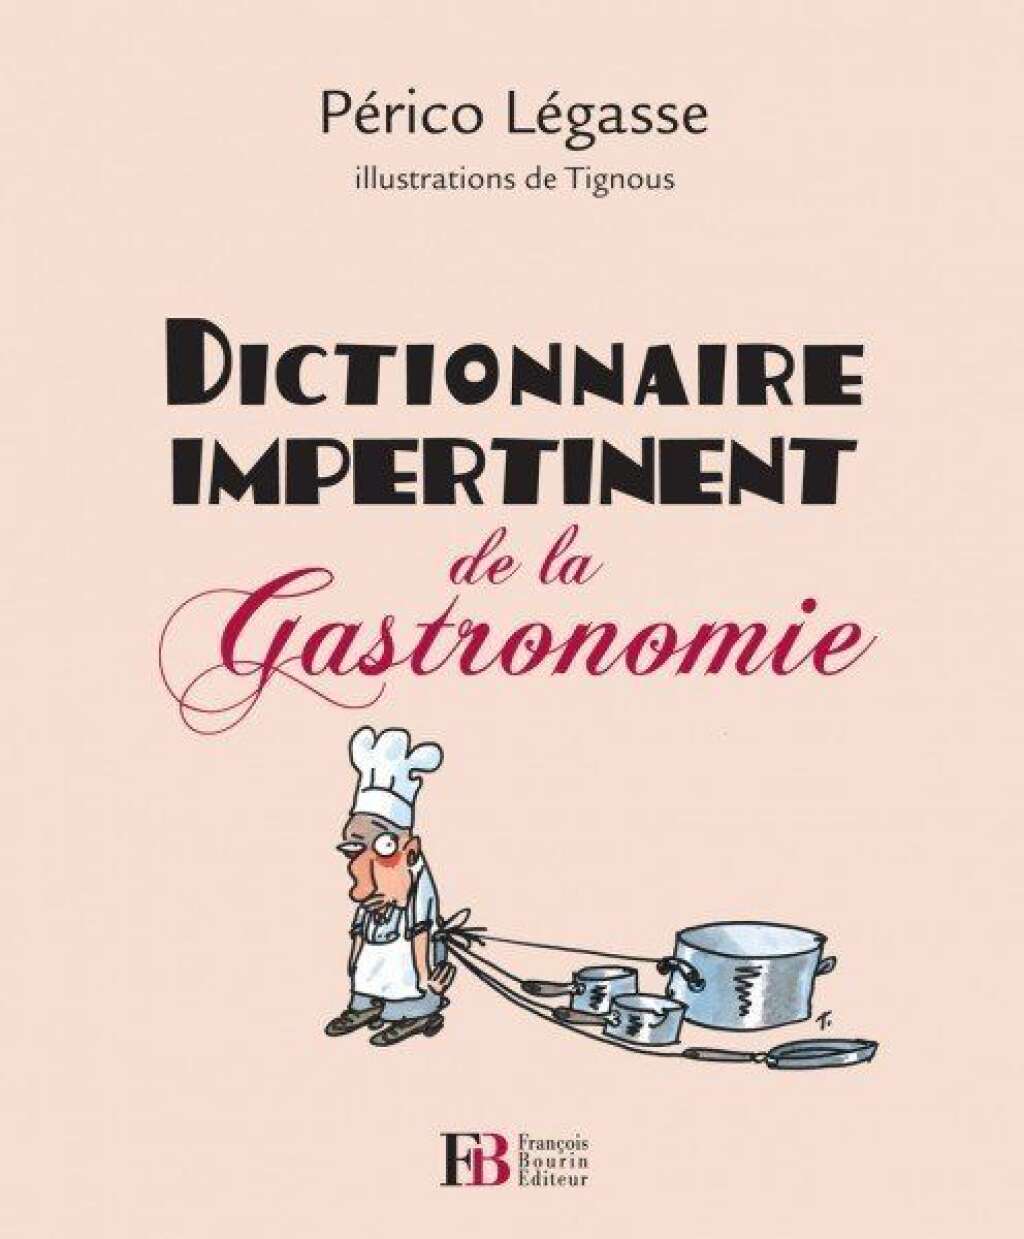 Dictionnaire impertinent de la gastronomie - Par Périco Légasse. Illustrations de Tignous.  François Bourin Éditeur  276 pages, 22 euros.